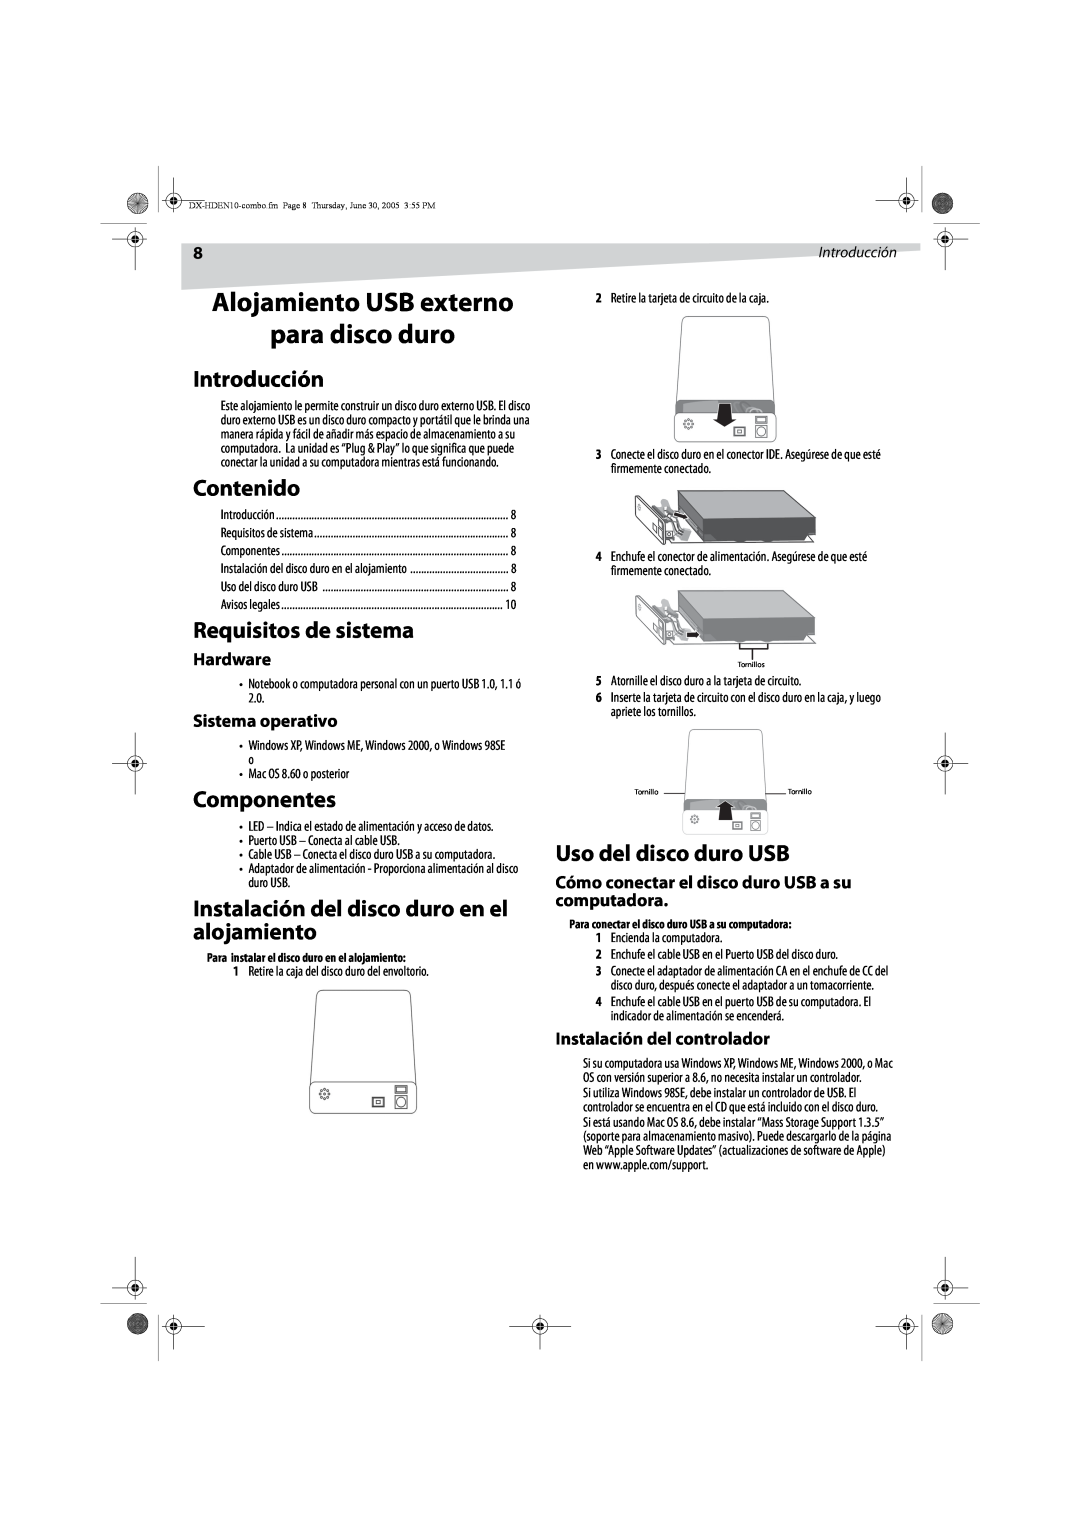 Dynex DX-HDEN10 manual Alojamiento USB externo para disco duro, Introducción, Contenido, Requisitos de sistema, Componentes 